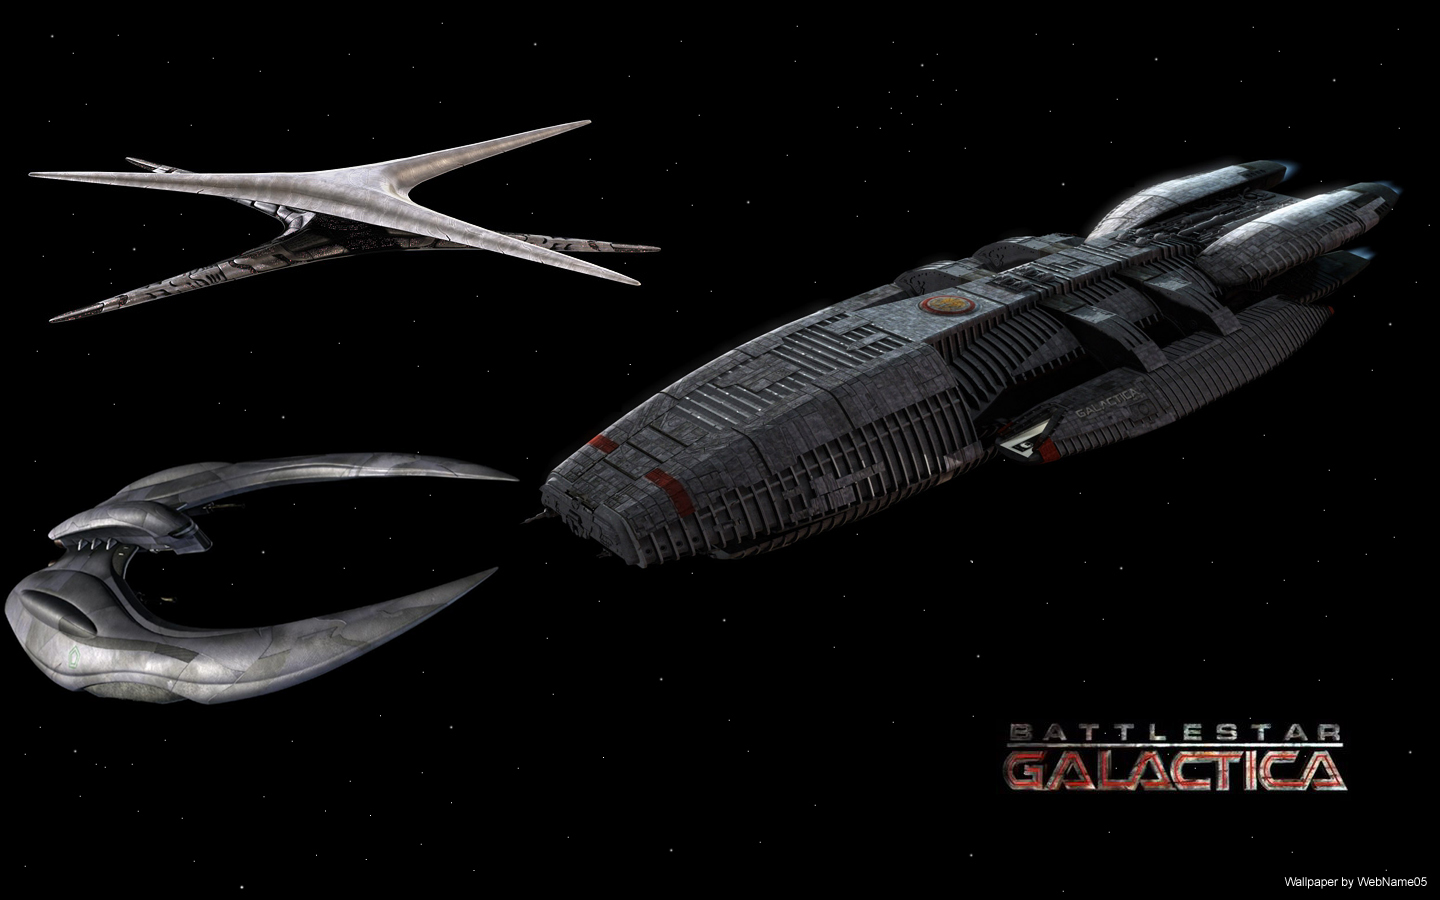 Battlestar Galactica Wallpaper By Webname05 Fan Art Movies